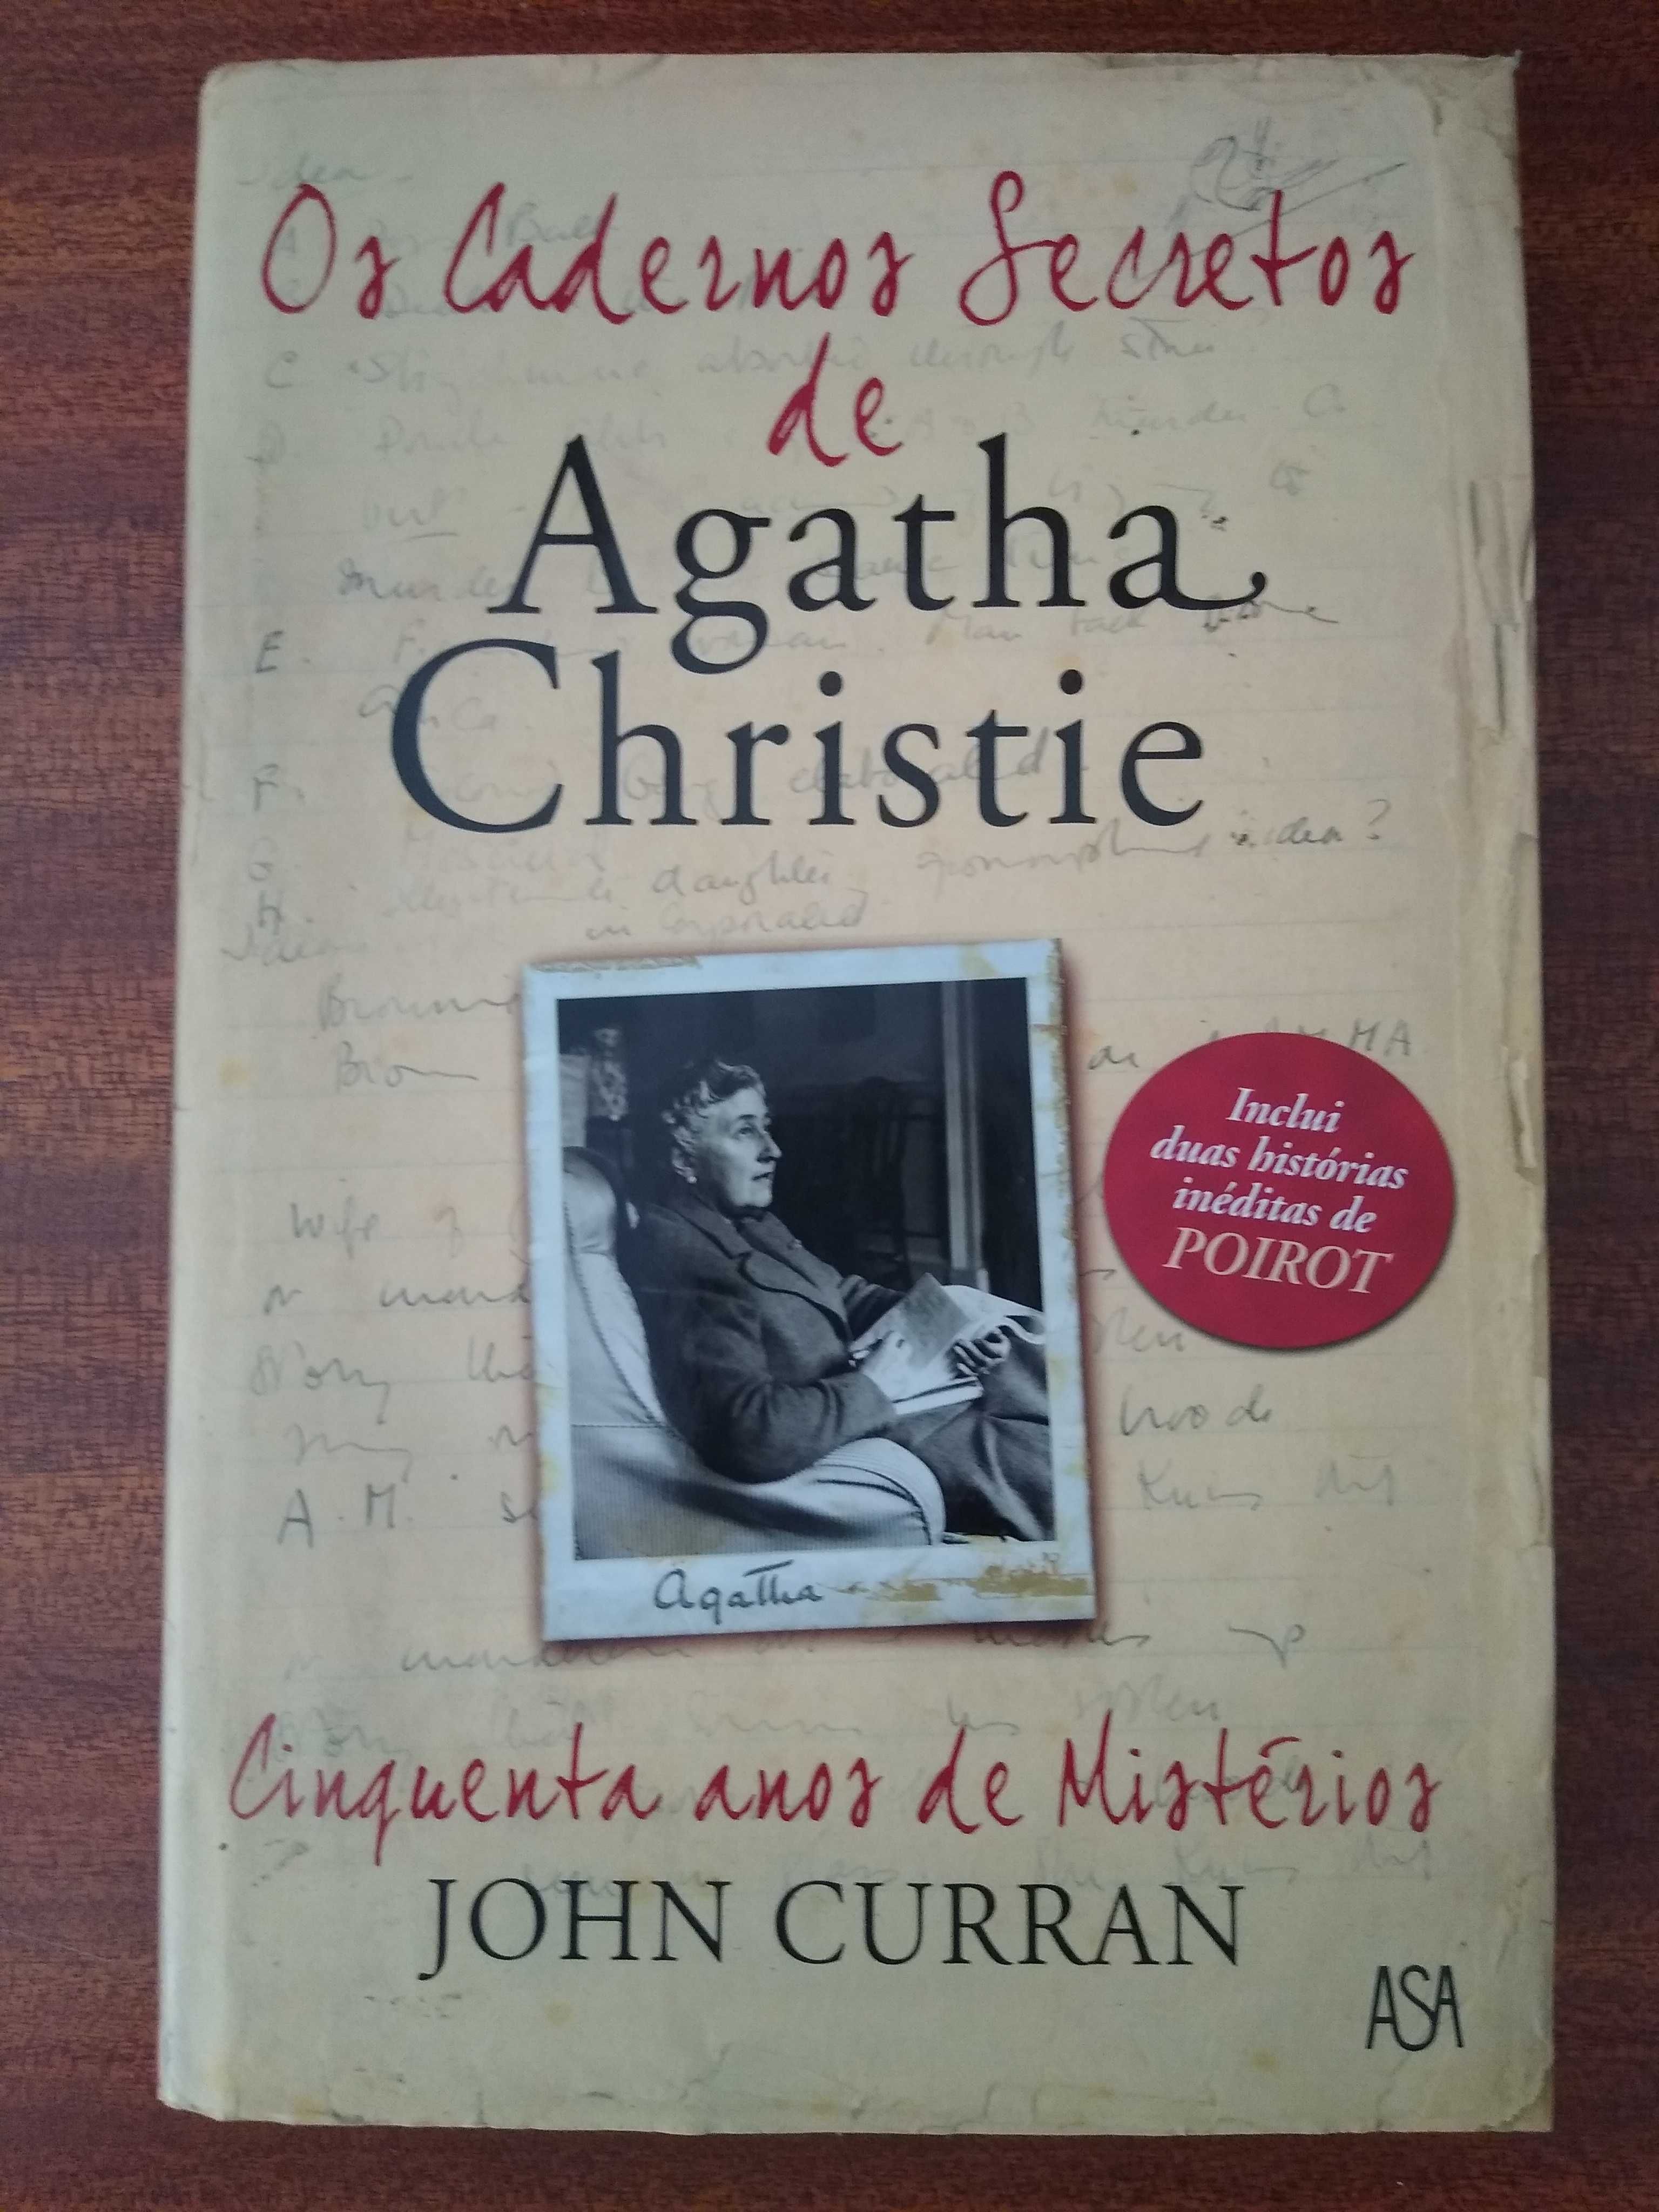 Livro "Os cadernos secretos de Agatha Christie"